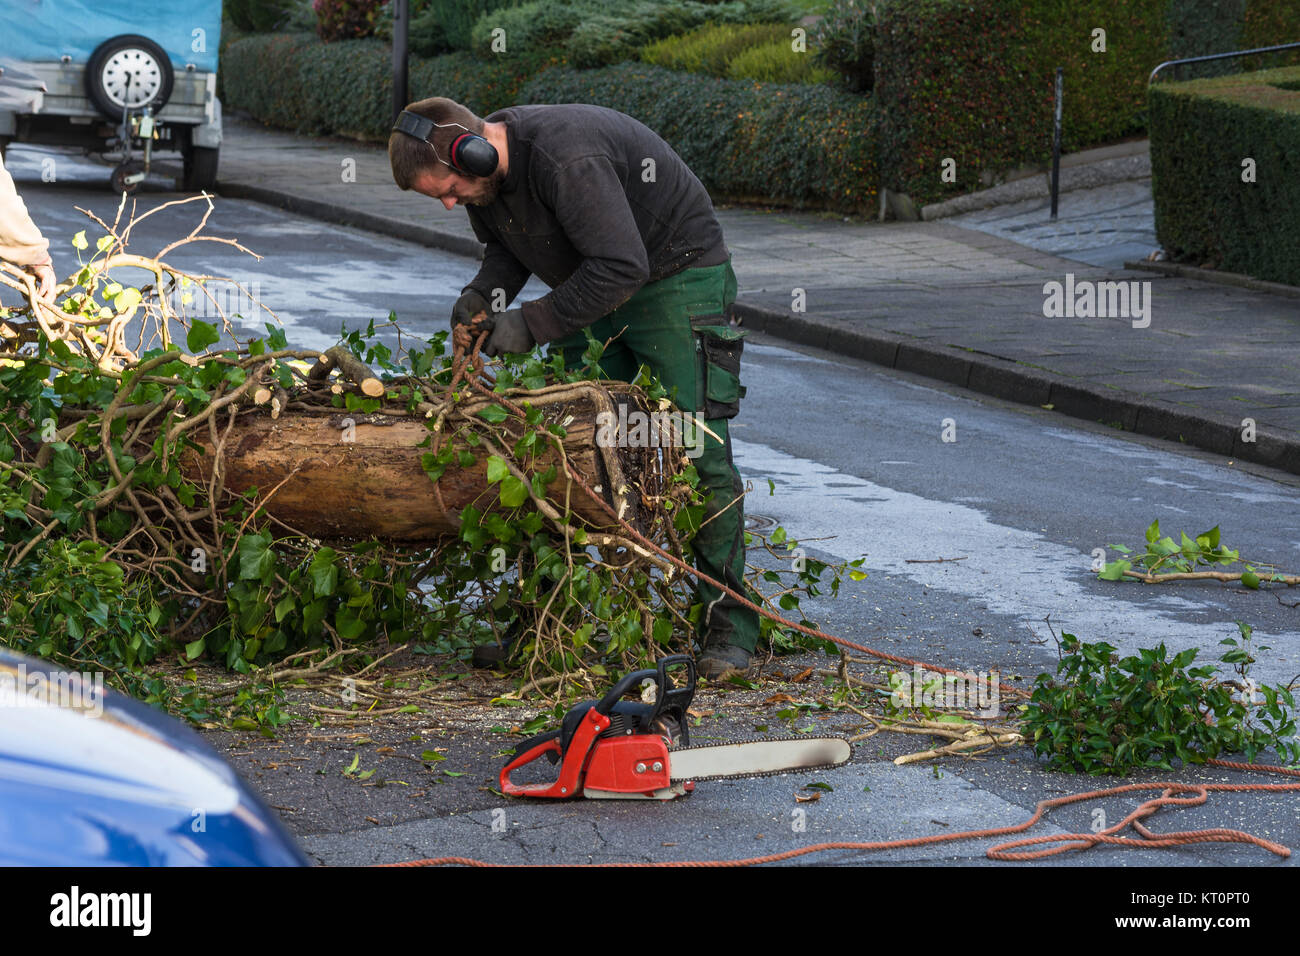 Forstarbeiter sägt einen Baumstamm mit einer Kettensäge und professionelle Werkzeug. Stock Photo